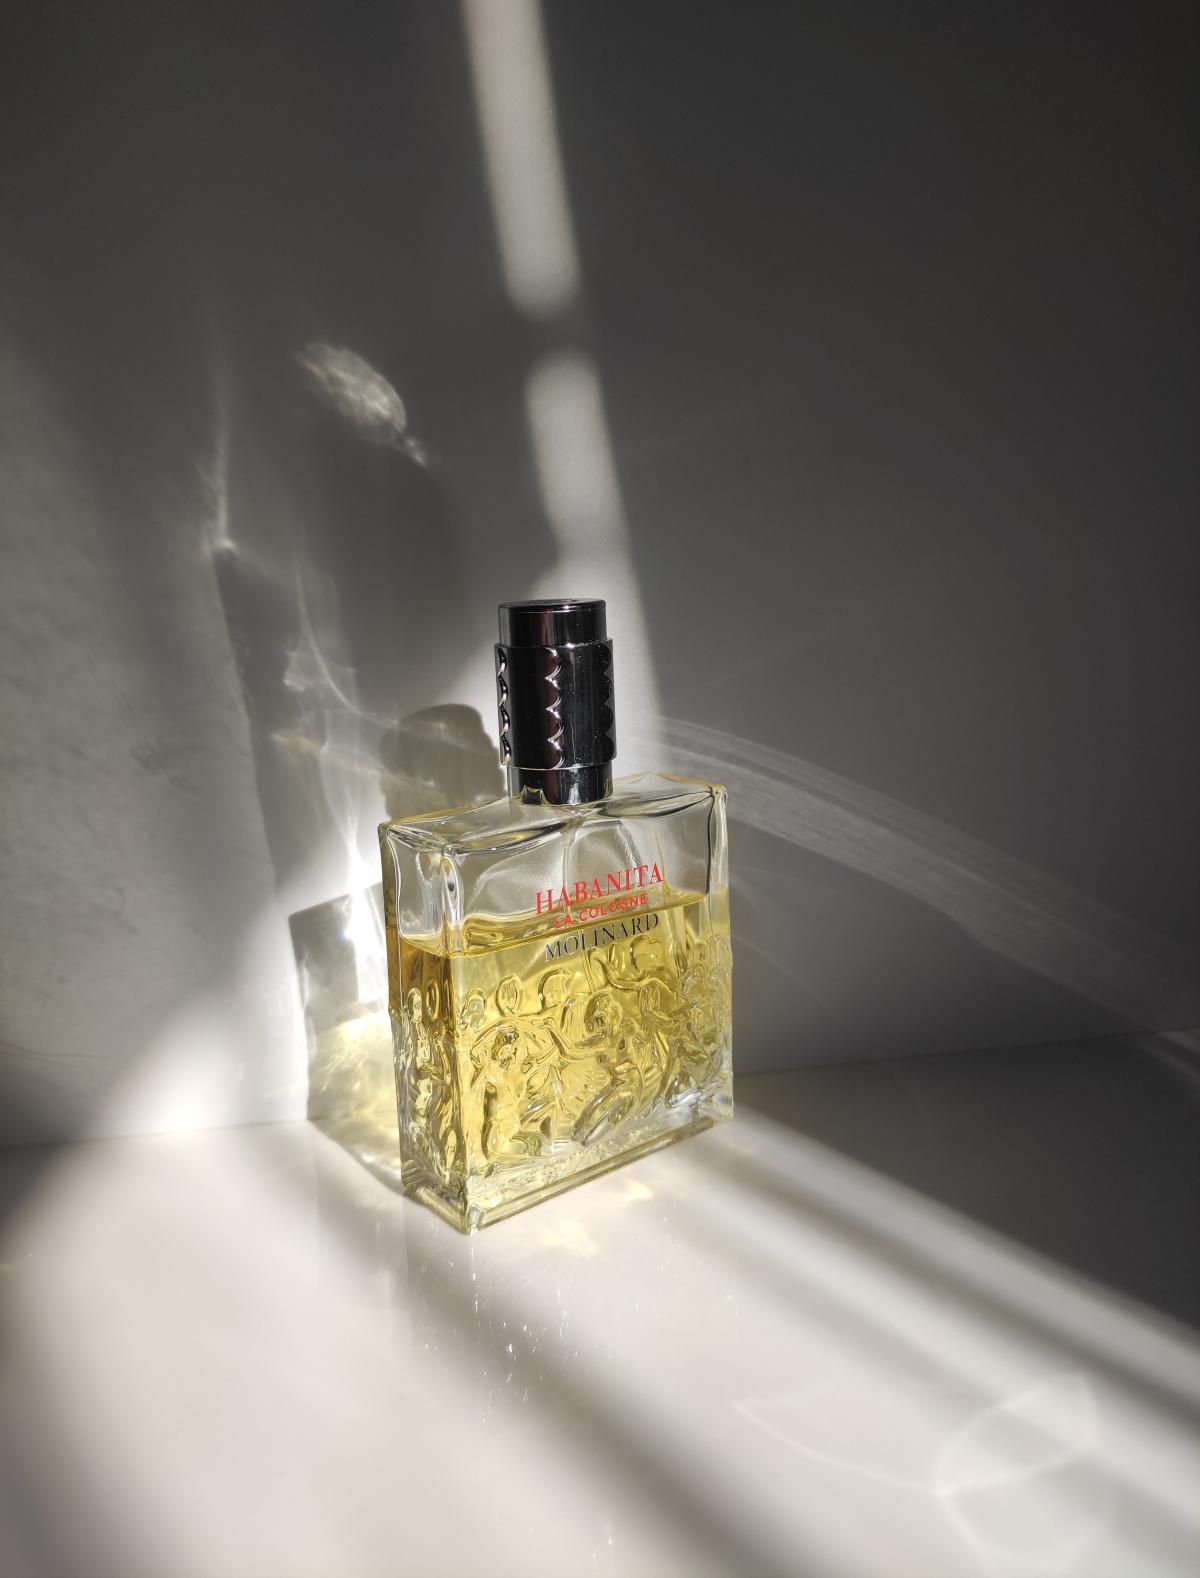 Habanita La Cologne Molinard perfume - a fragrance for women 2016